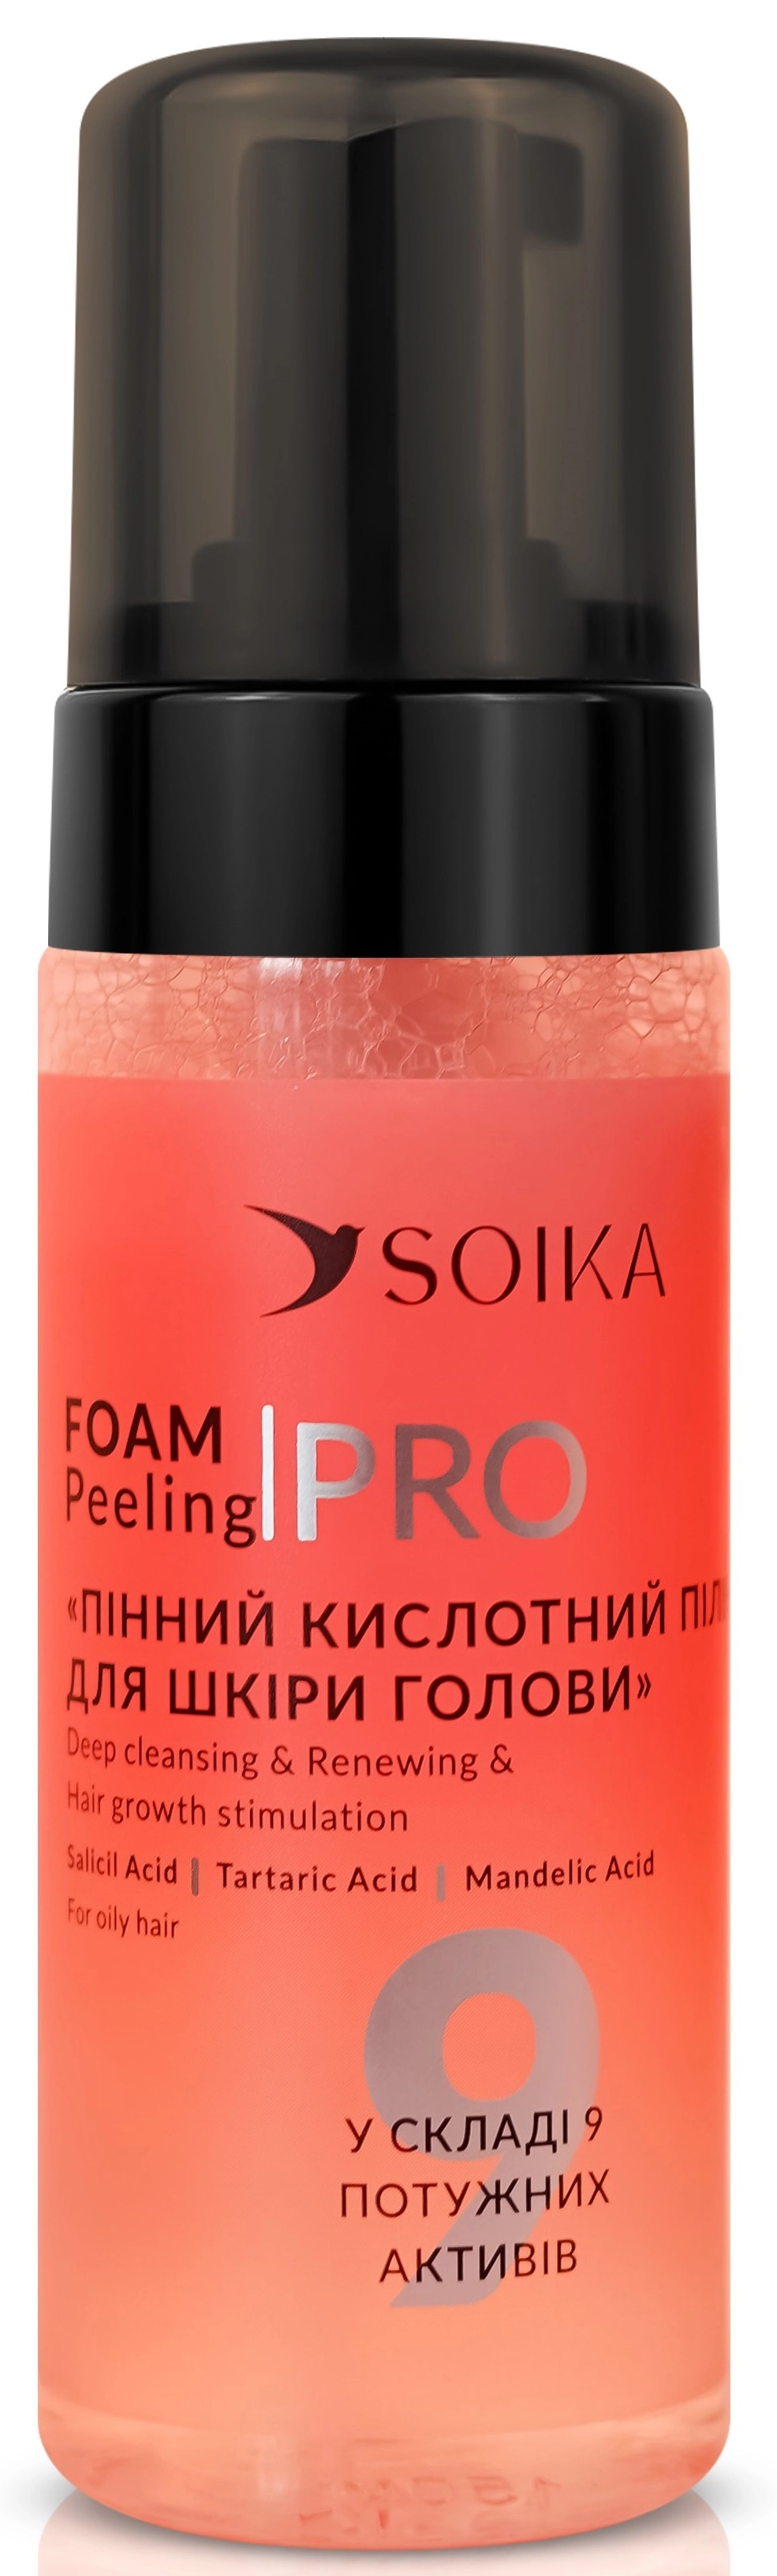 Пилинг пенный для жирной кожи головы с салициловой кислотой "Глубокая очистка и восстановление" - Soika Foam Peeling PRO For Oily Hair, 150 мл - фото N1